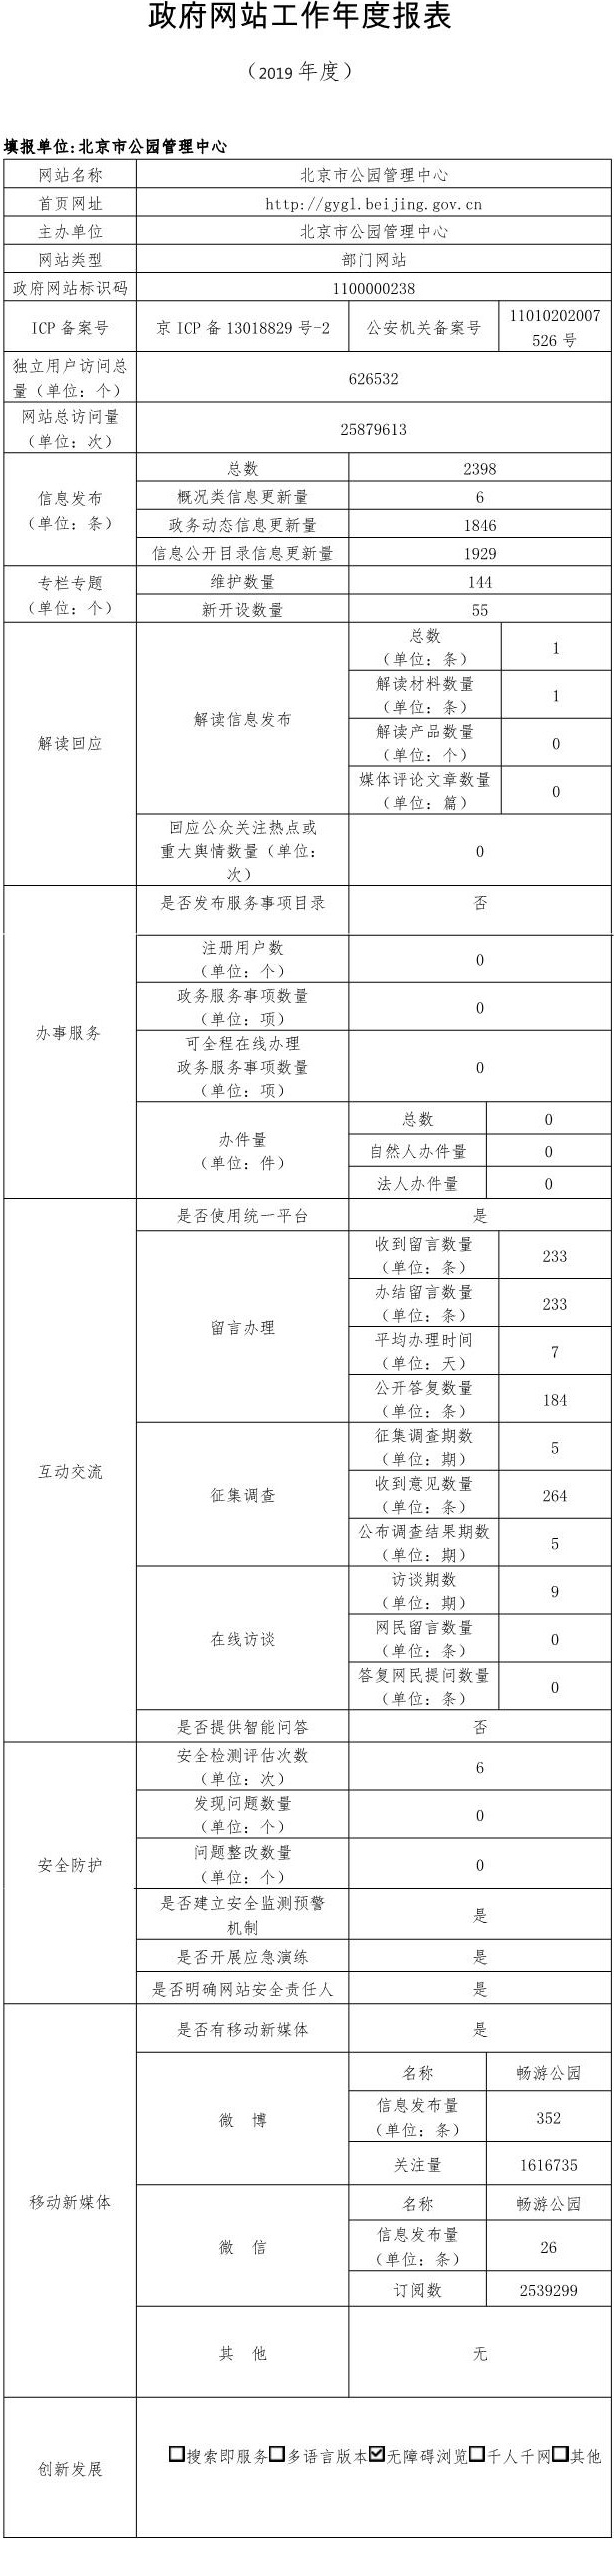 北京市公園管理中心2019年政府網站年度工作報表